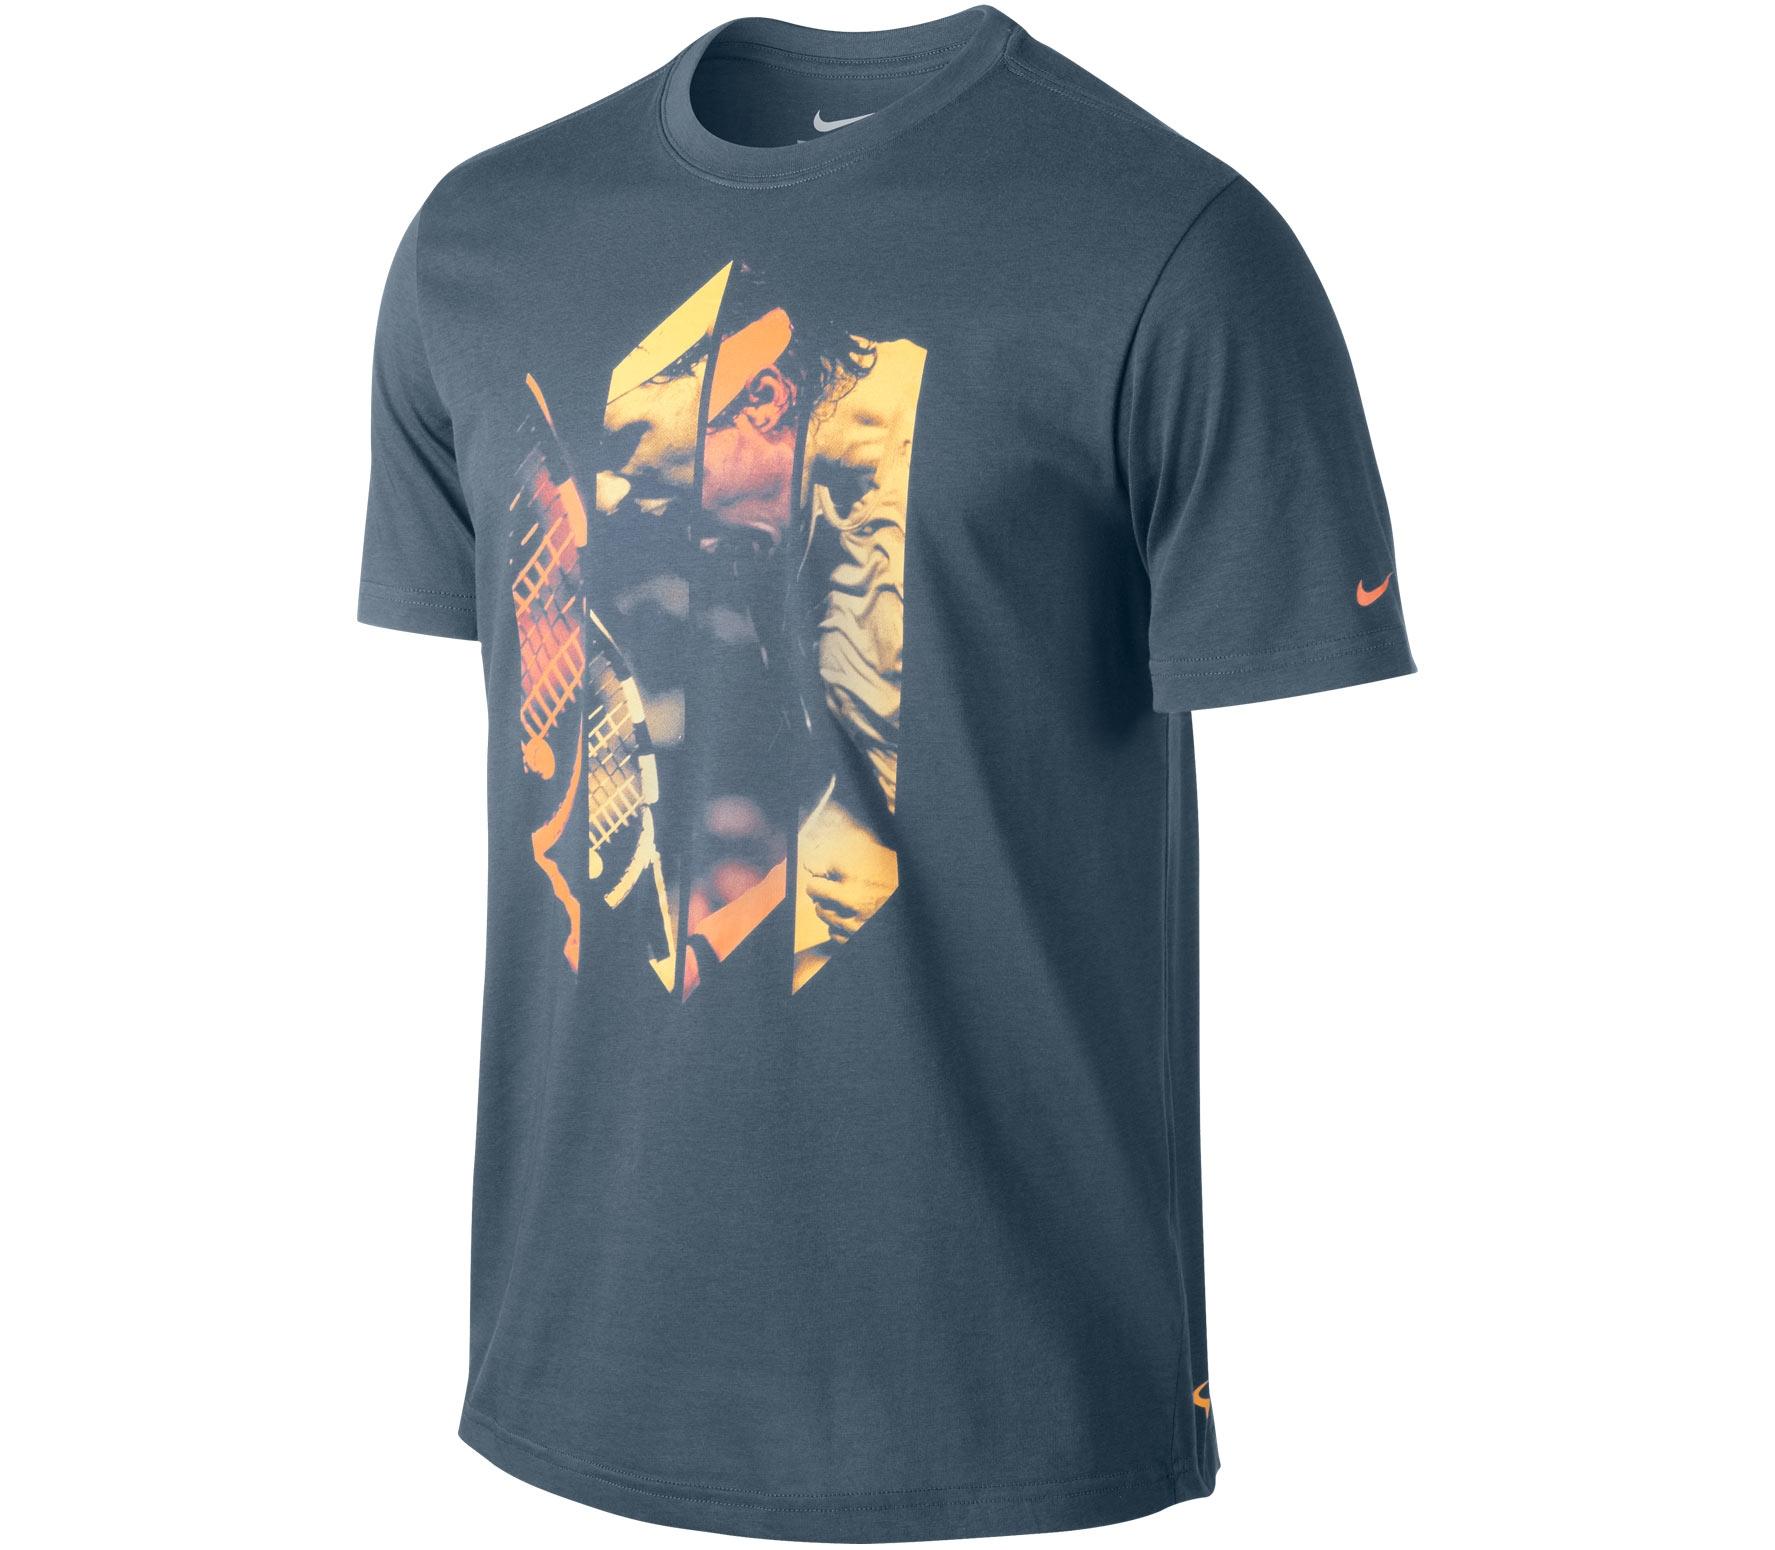 Foto Nike - Tennisshirt Herren Rafael Nadal Tee - SP13 - XL